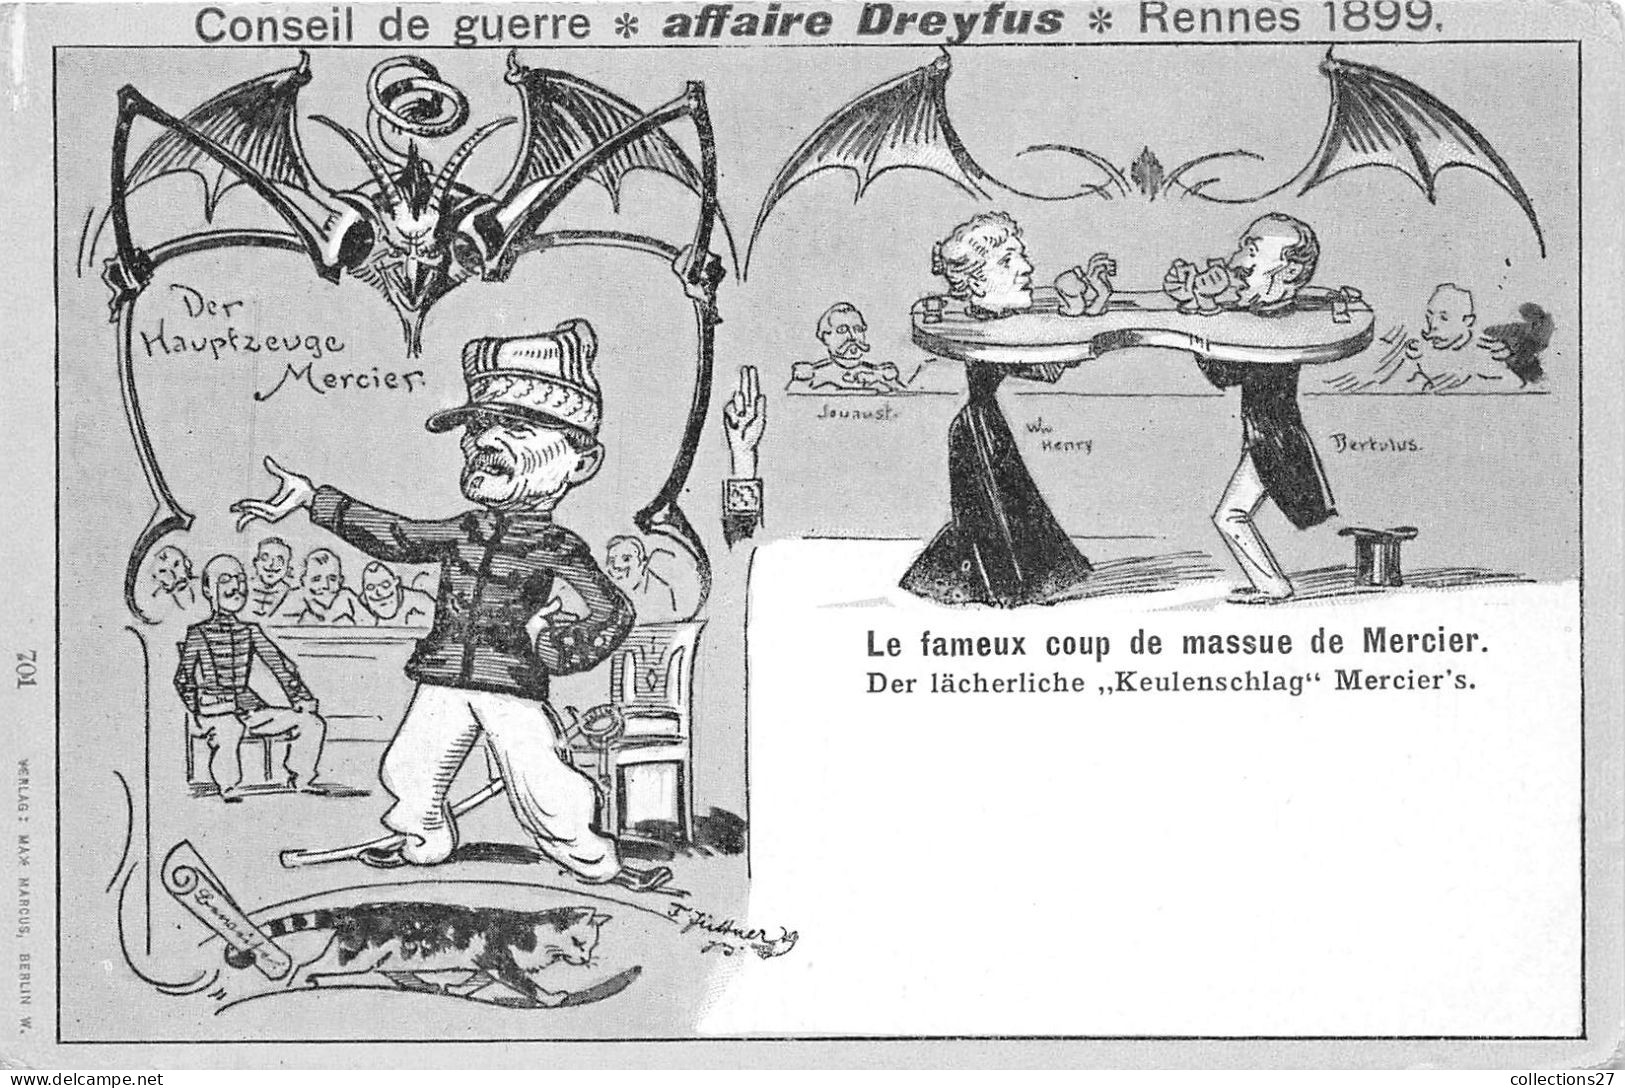 AFFAIRE DREYFUS- CONSEIL DE GUERRE- RENNES 1899 - LE FAMEUX COUP DE MASSURE DE MERCIER - Personnages